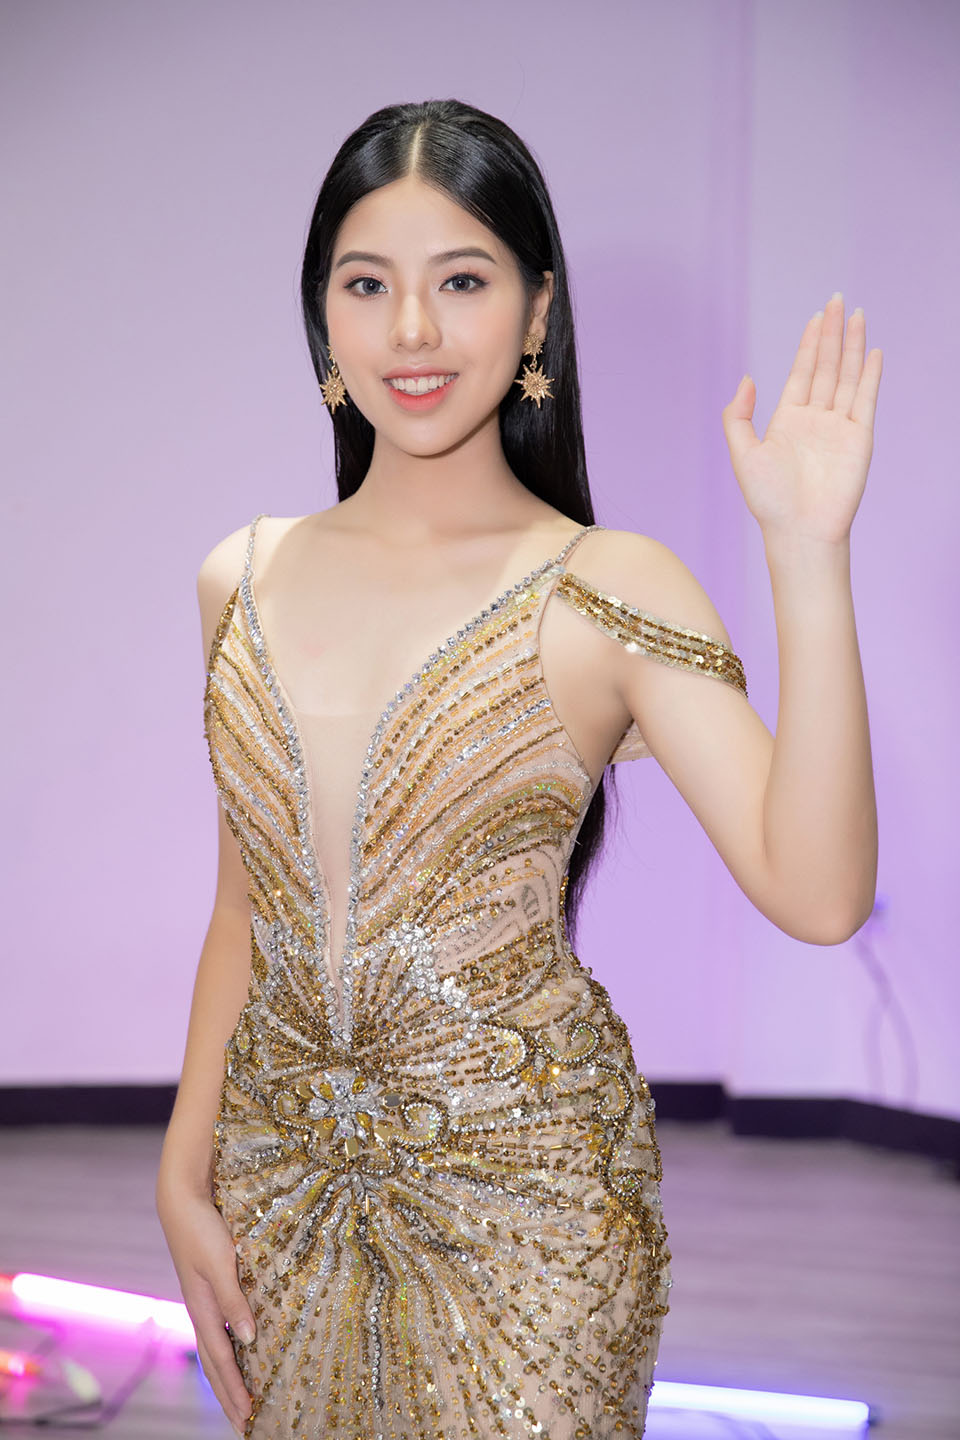 "Hoa hậu siêu quốc gia" Philippines dạy catwalk cho Hoa hậu Việt 16 tuổi đi thi quốc tế - 4